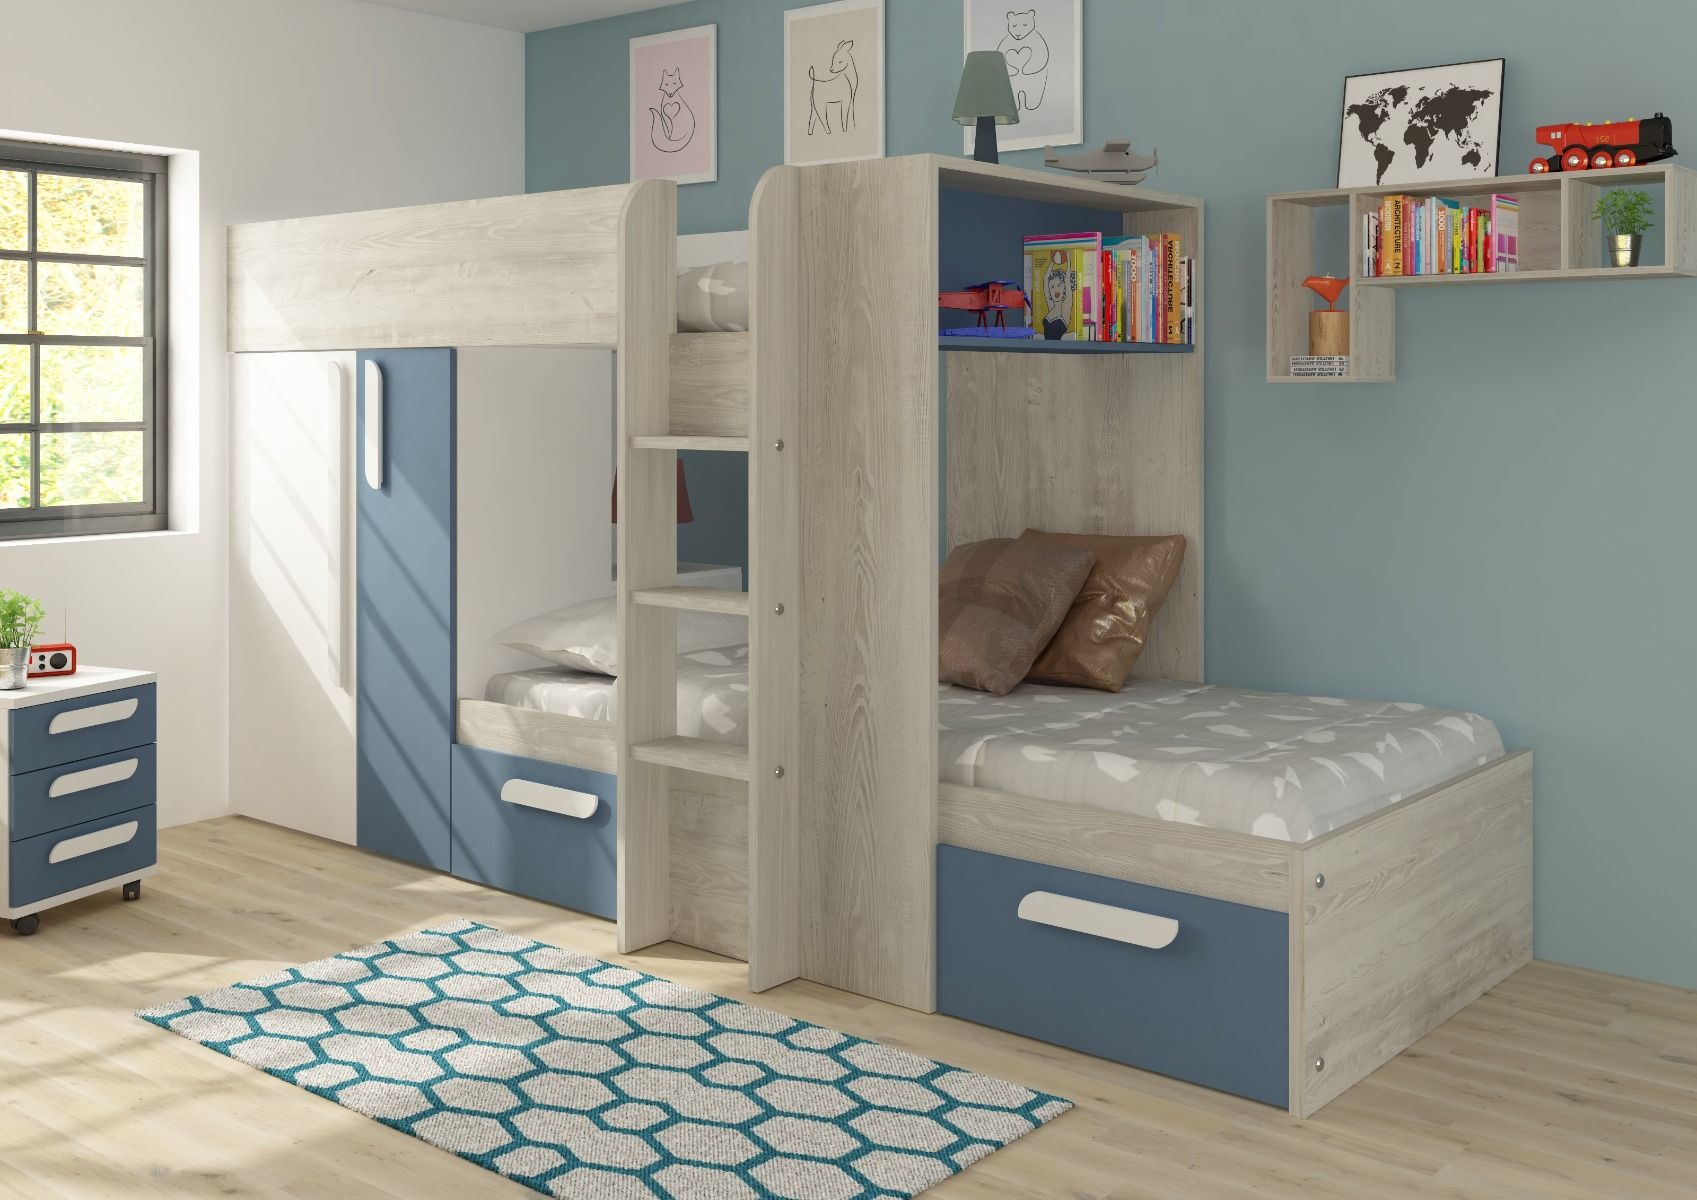 Trasman Barca Bunk Bed, Bunk Beds With Shelves Uk